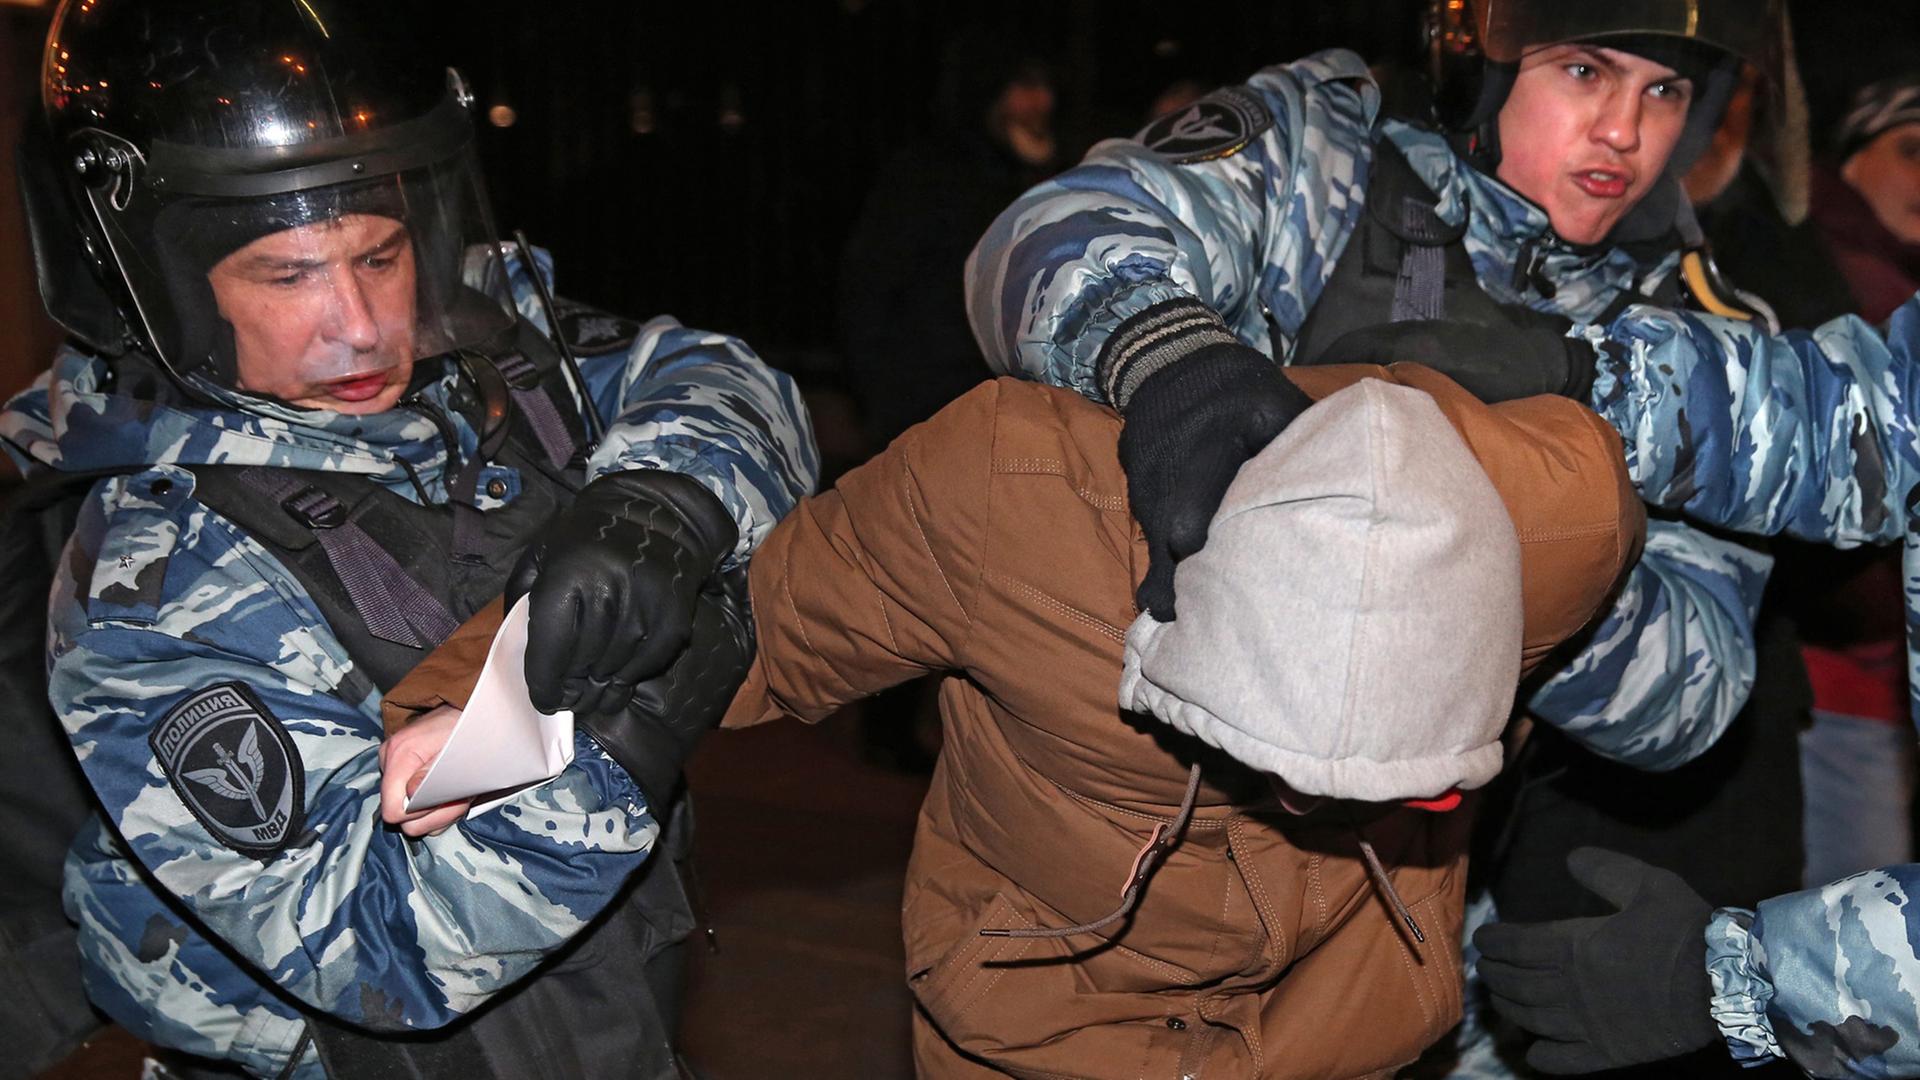 Zwei Polizisten führen einen Demonstranten ab, rechts außerhalb des Bildes ein dritter Polizist. Der Demonstrant trägt eine Kapuze und hat den Kopf gesenkt.